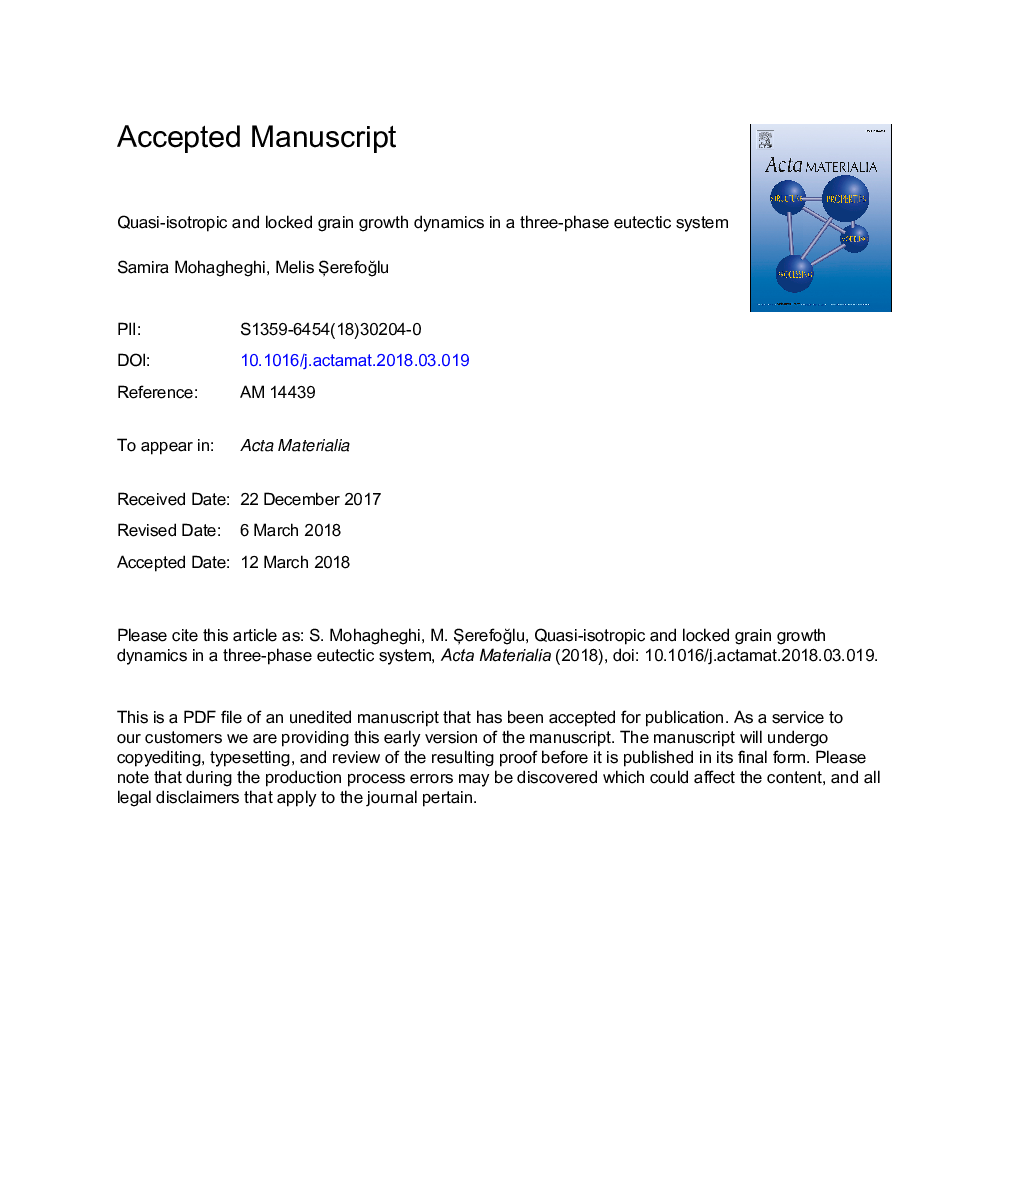 دینامیک رشد دانه ای شبه ایذروپیک و قفل شده در یک سیستم الکترومغناطیسی سه مرحله ای 